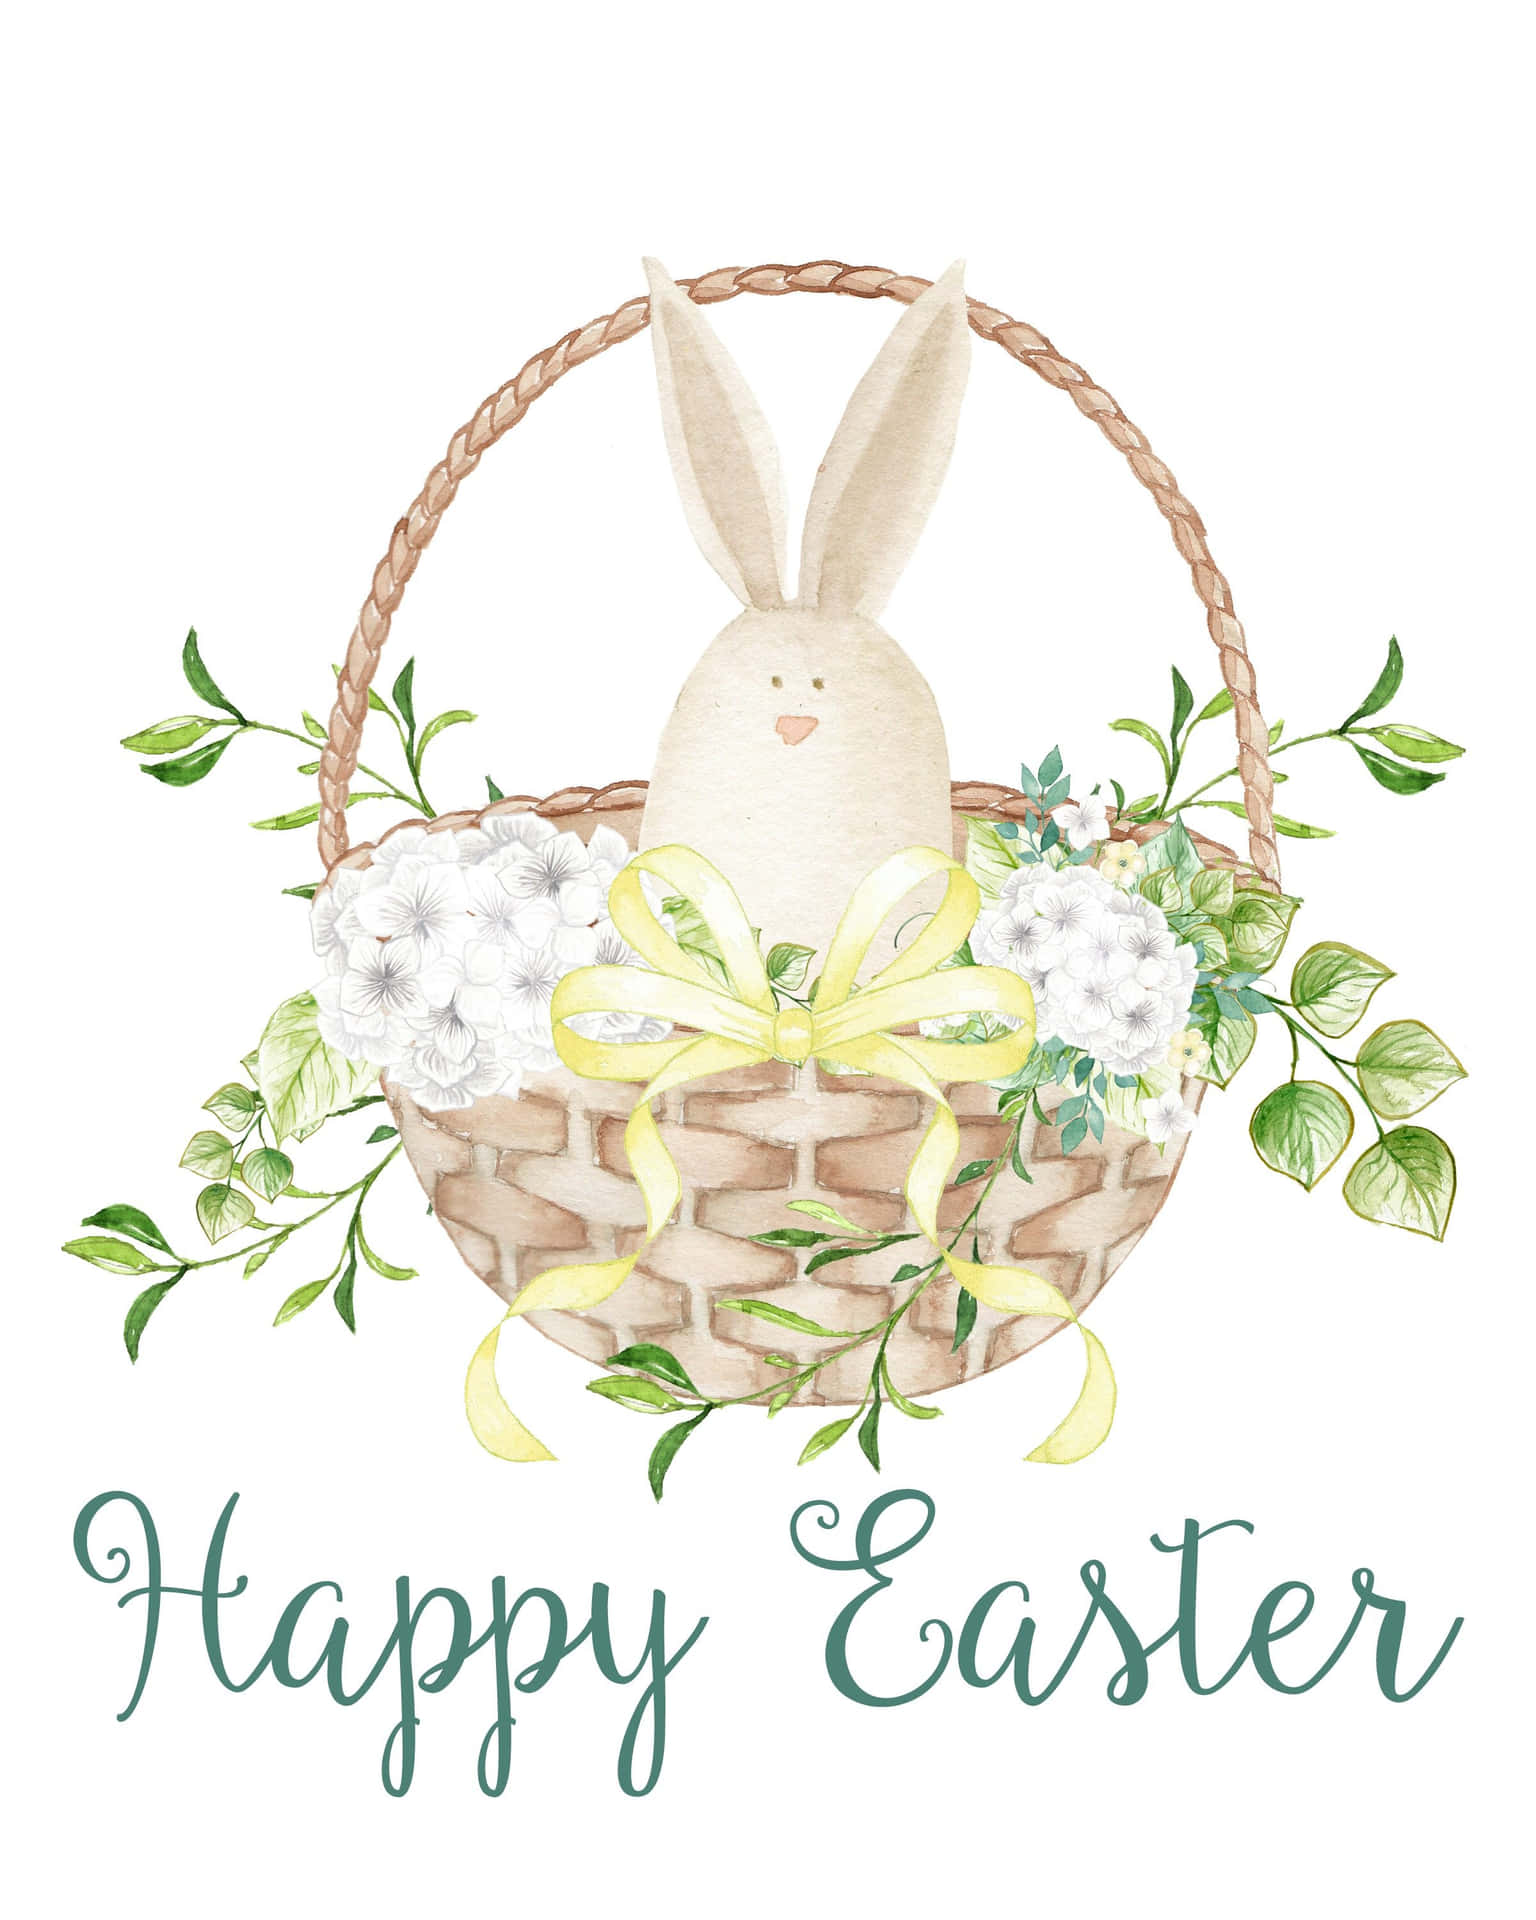 Feieredie Auferstehung Jesu An Diesem Ostern!